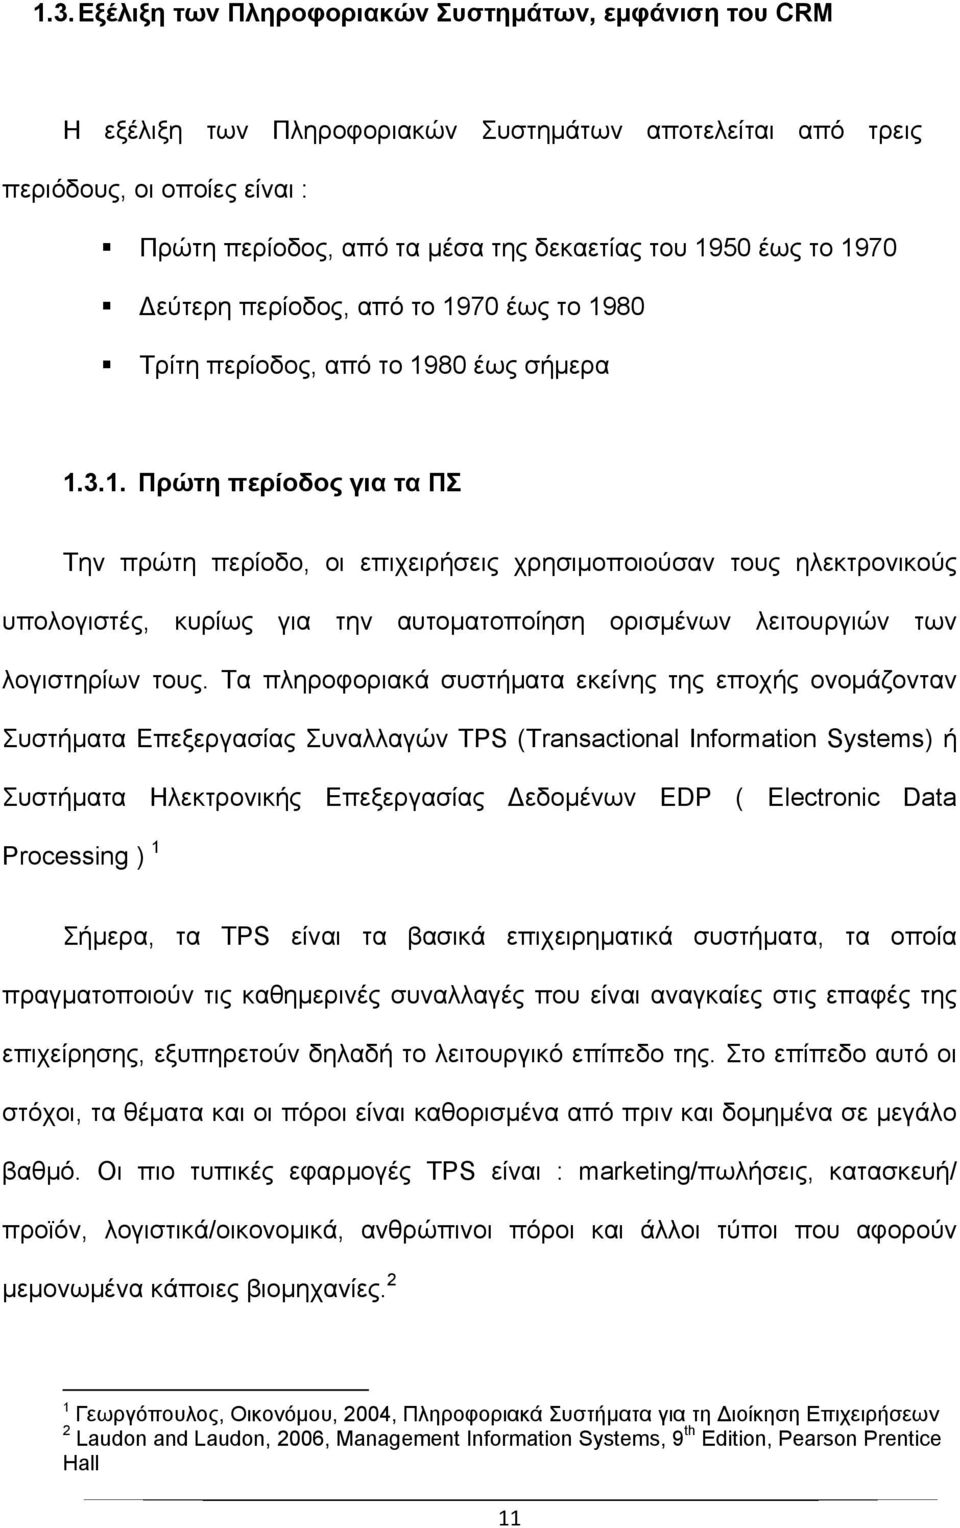 Τα πληροφοριακά συστήματα εκείνης της εποχής ονομάζονταν Συστήματα Επεξεργασίας Συναλλαγών TPS (Transactional Information Systems) ή Συστήματα Ηλεκτρονικής Επεξεργασίας εδομένων EDP ( Electronic Data